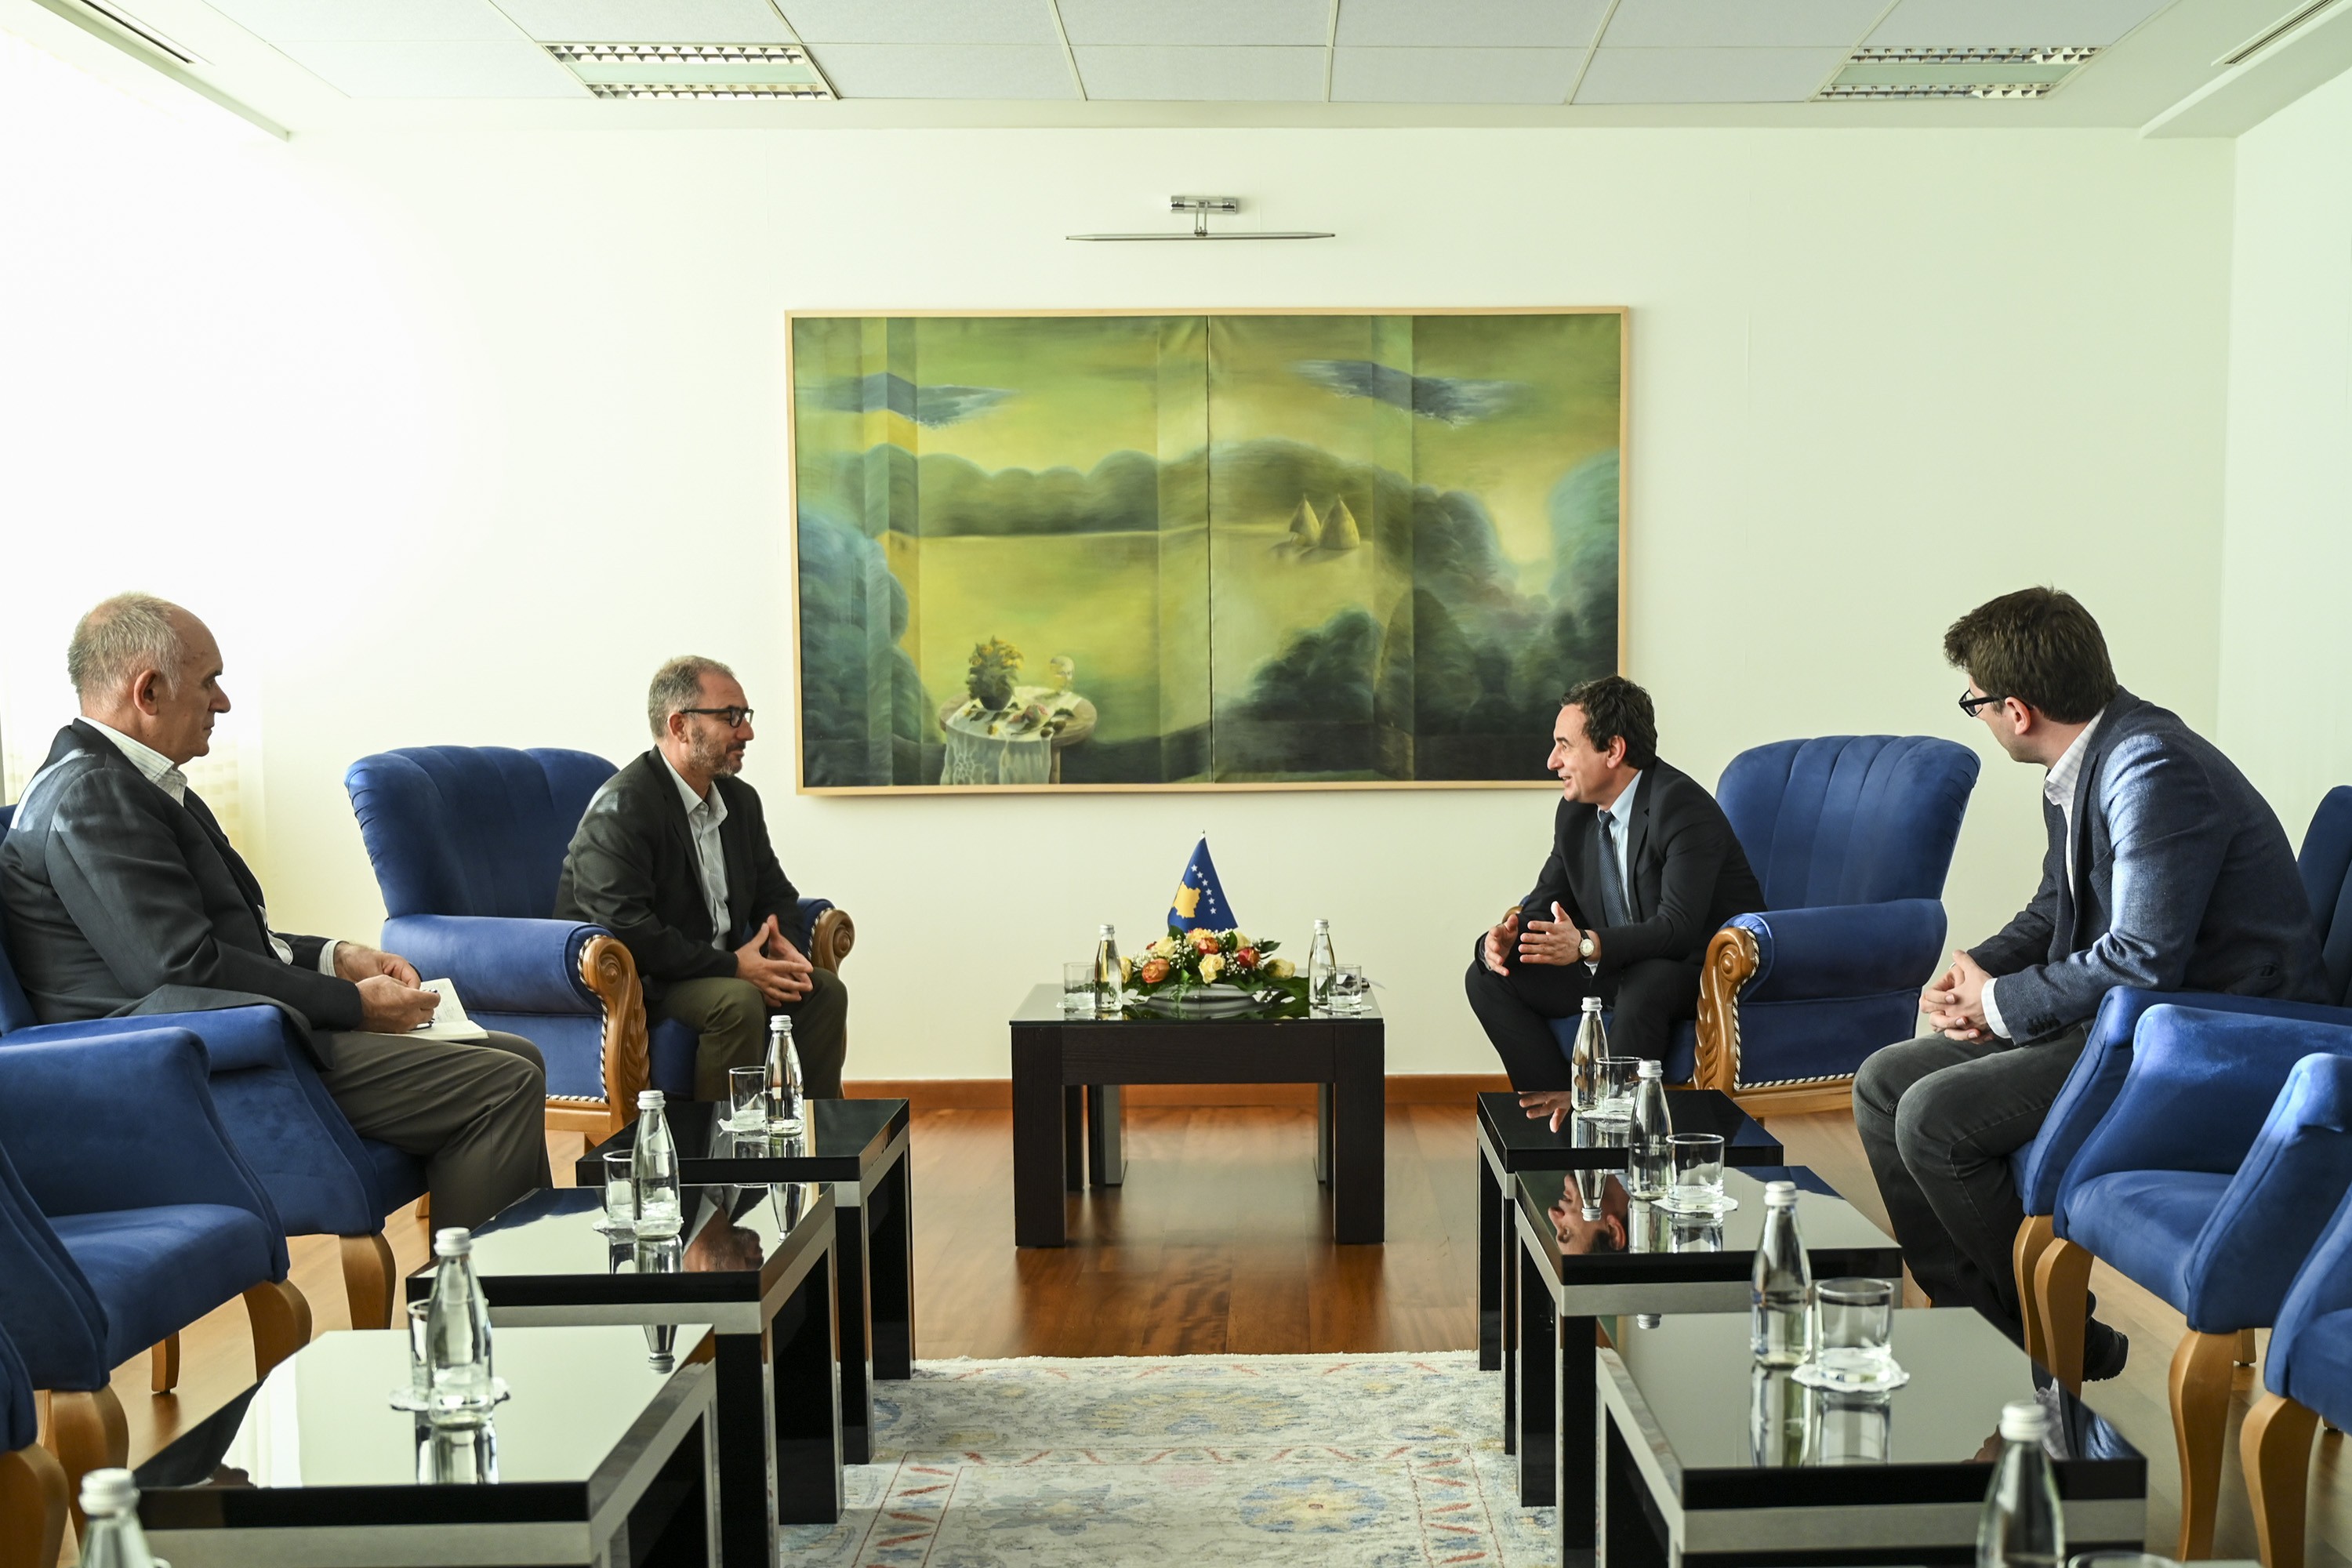 Kryeministri Kurti takohet me kryetarin e BSPK-së, Atdhe Hykolli